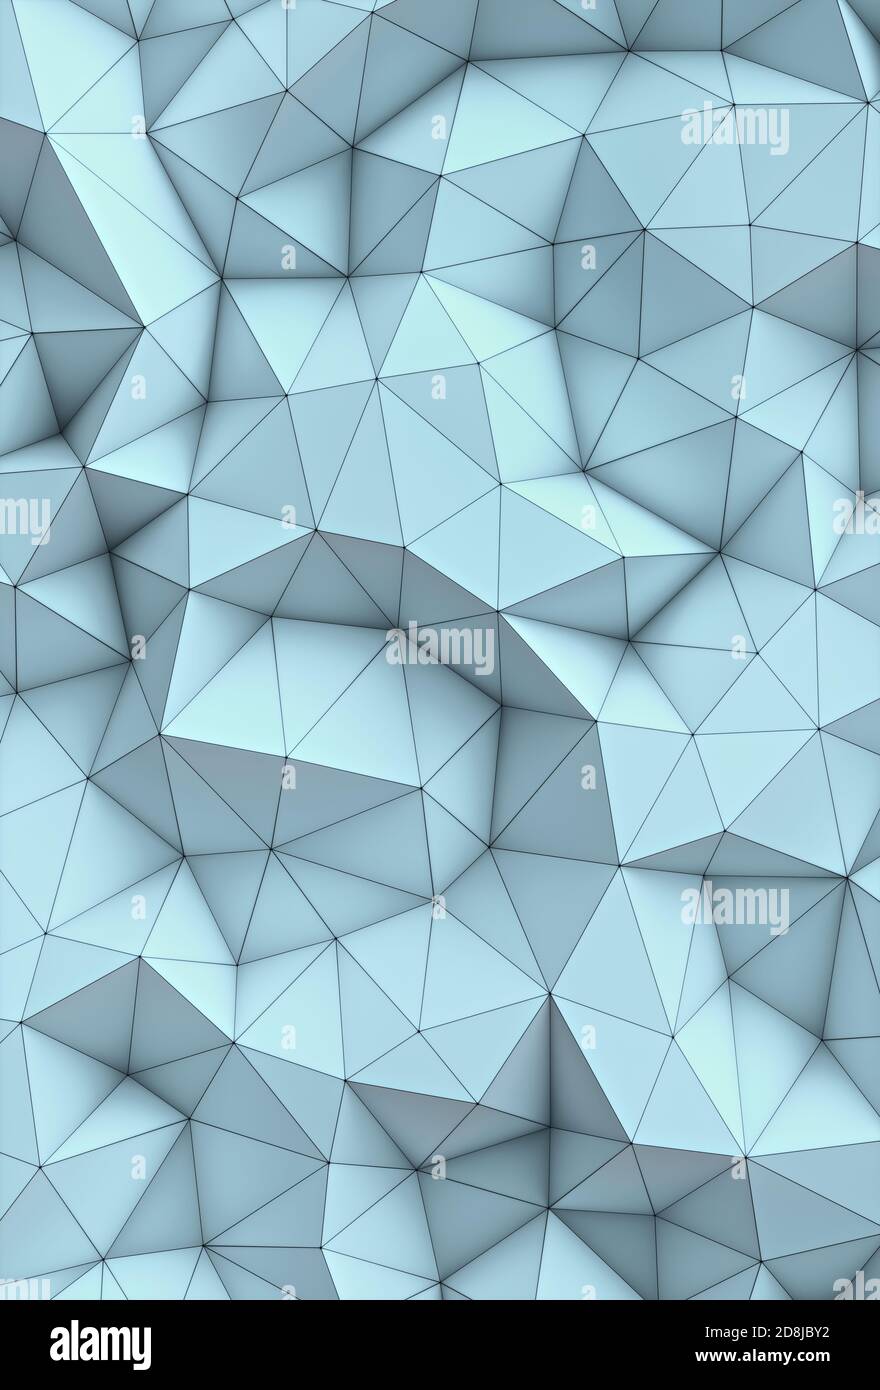 3D'illustrazione. Abstract immagine di sfondo, collegamenti in linee geometriche e di forma triangolare. Foto Stock